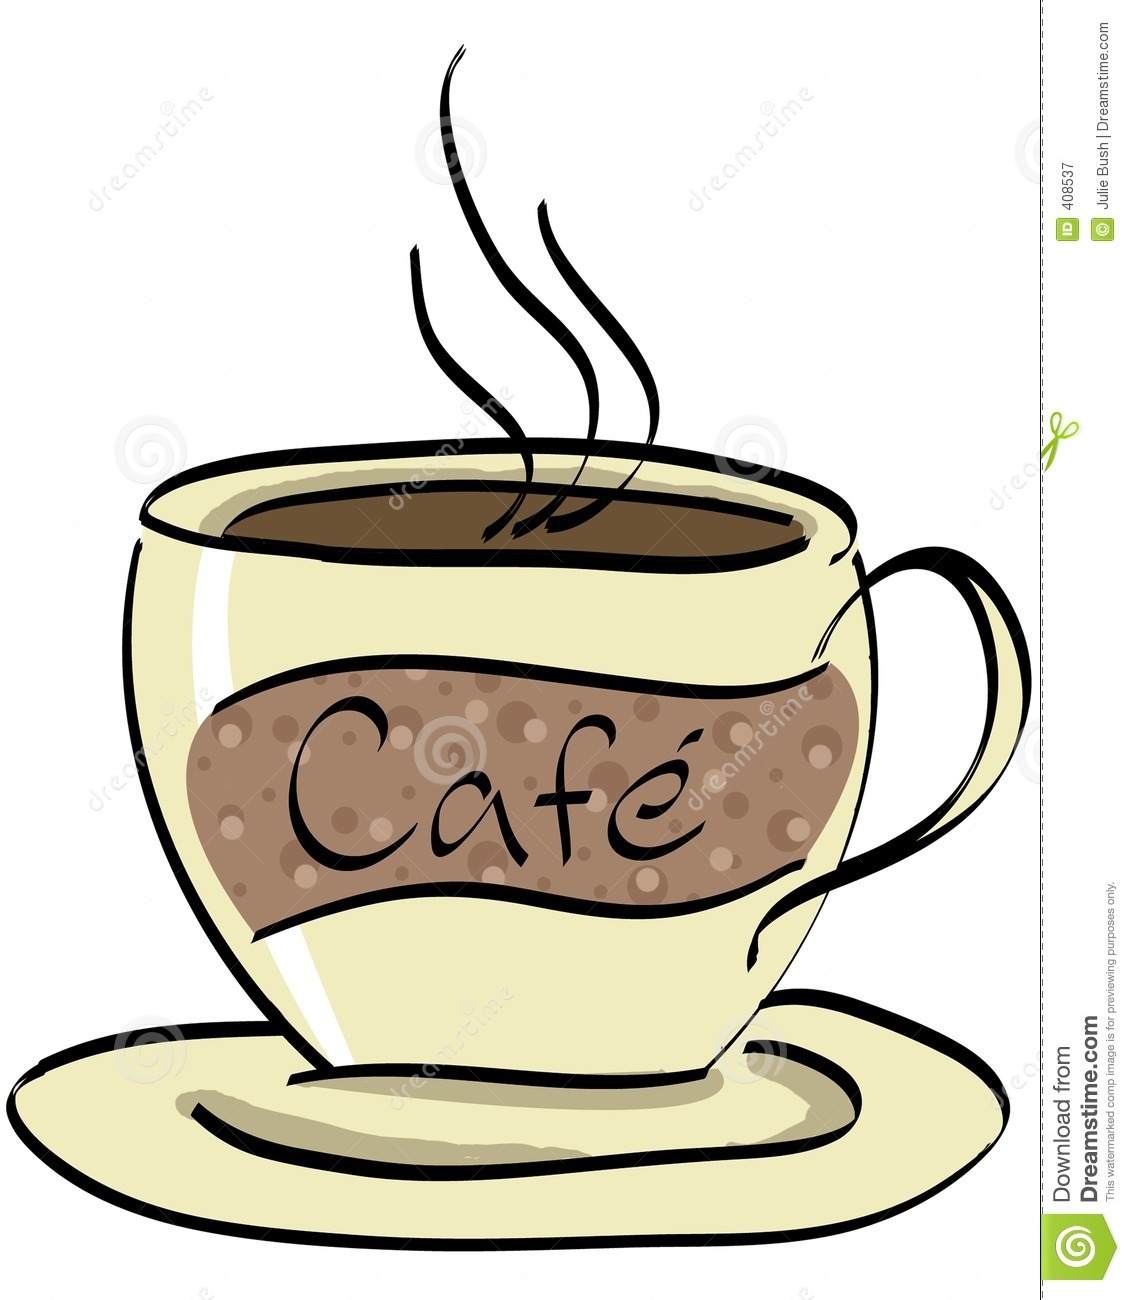 cafe clipart cafe menu